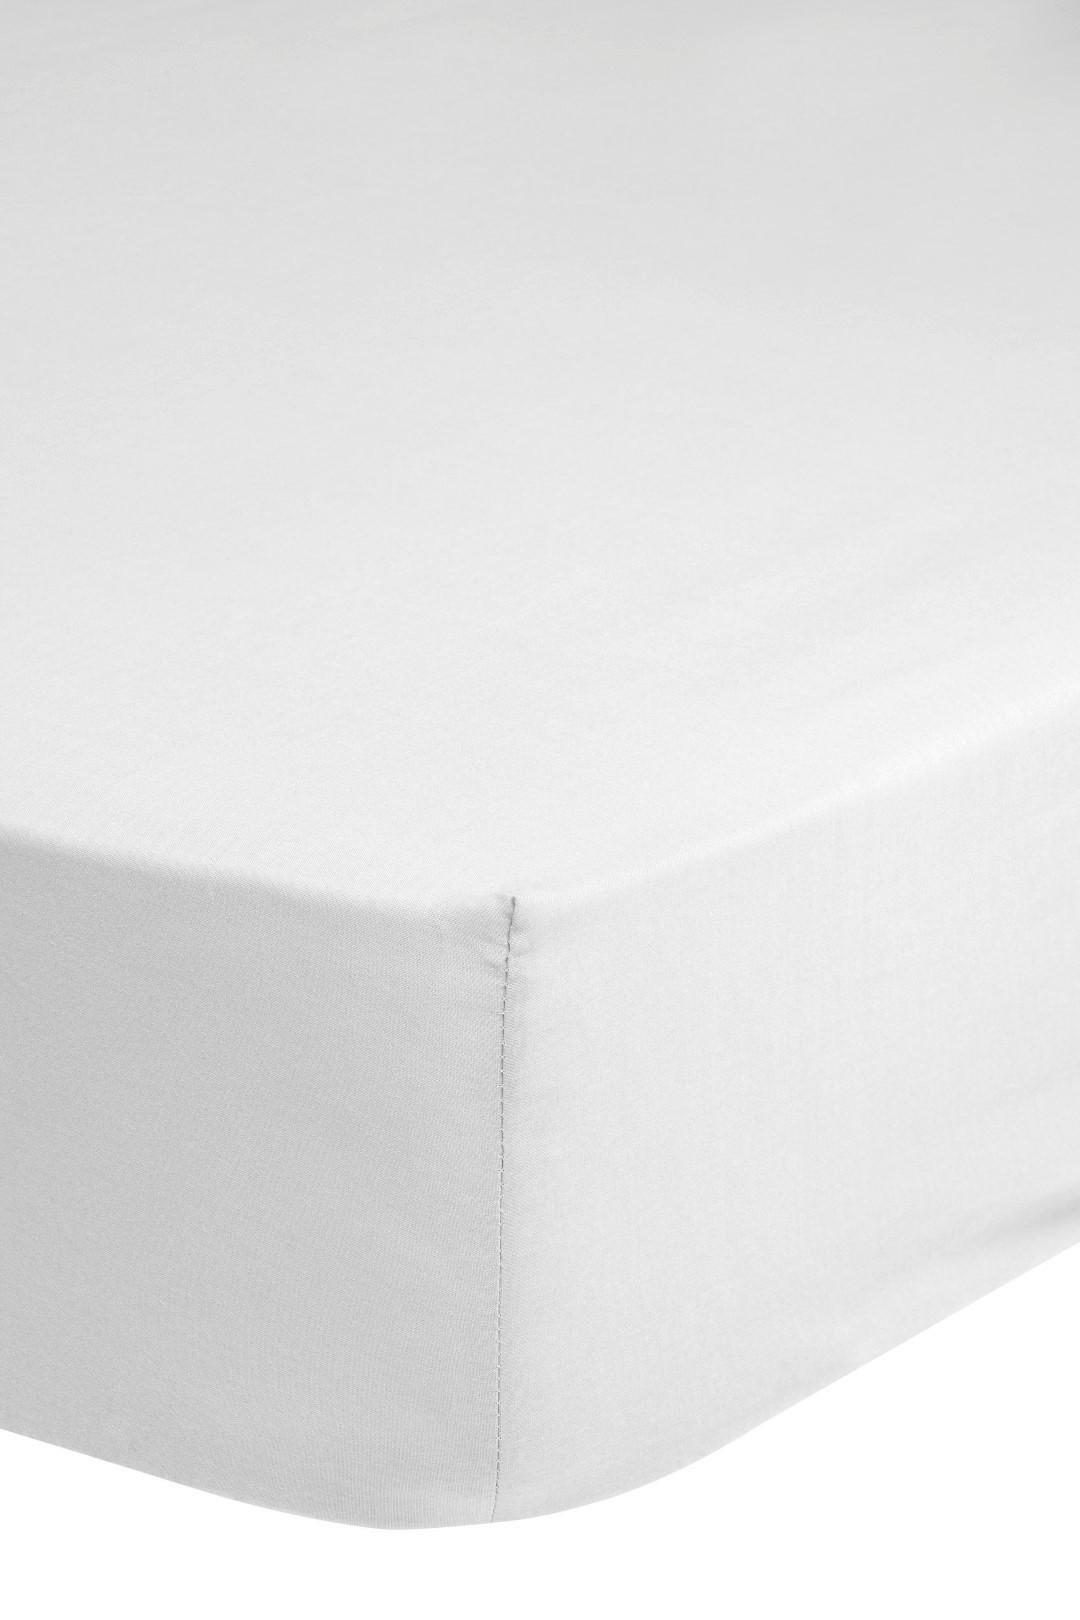 Elastické Prostěradlo Jersey 160-180x200cm Bavlna - bílá, Basics, textil (160-180/200cm) - MID.YOU